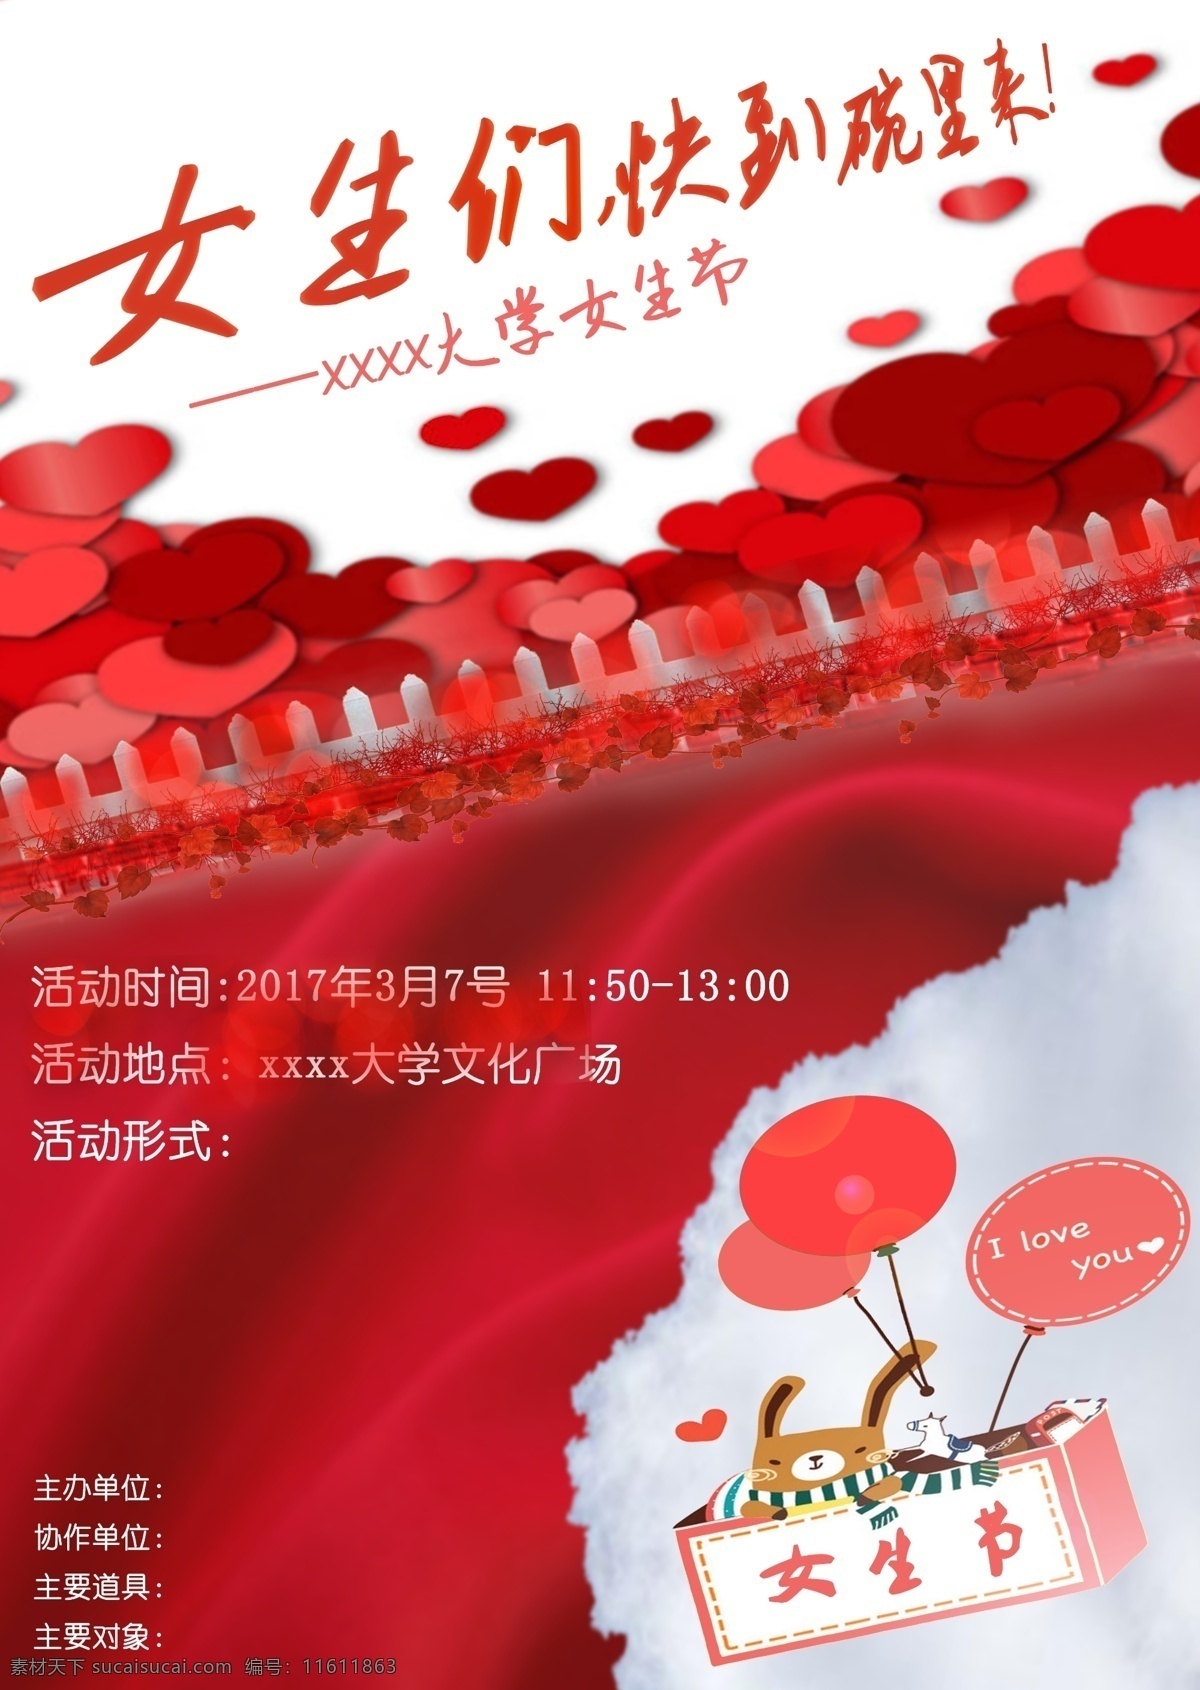 女生节 女生 海报 爱情 浪漫 红色 爱心 文化艺术 节日庆祝